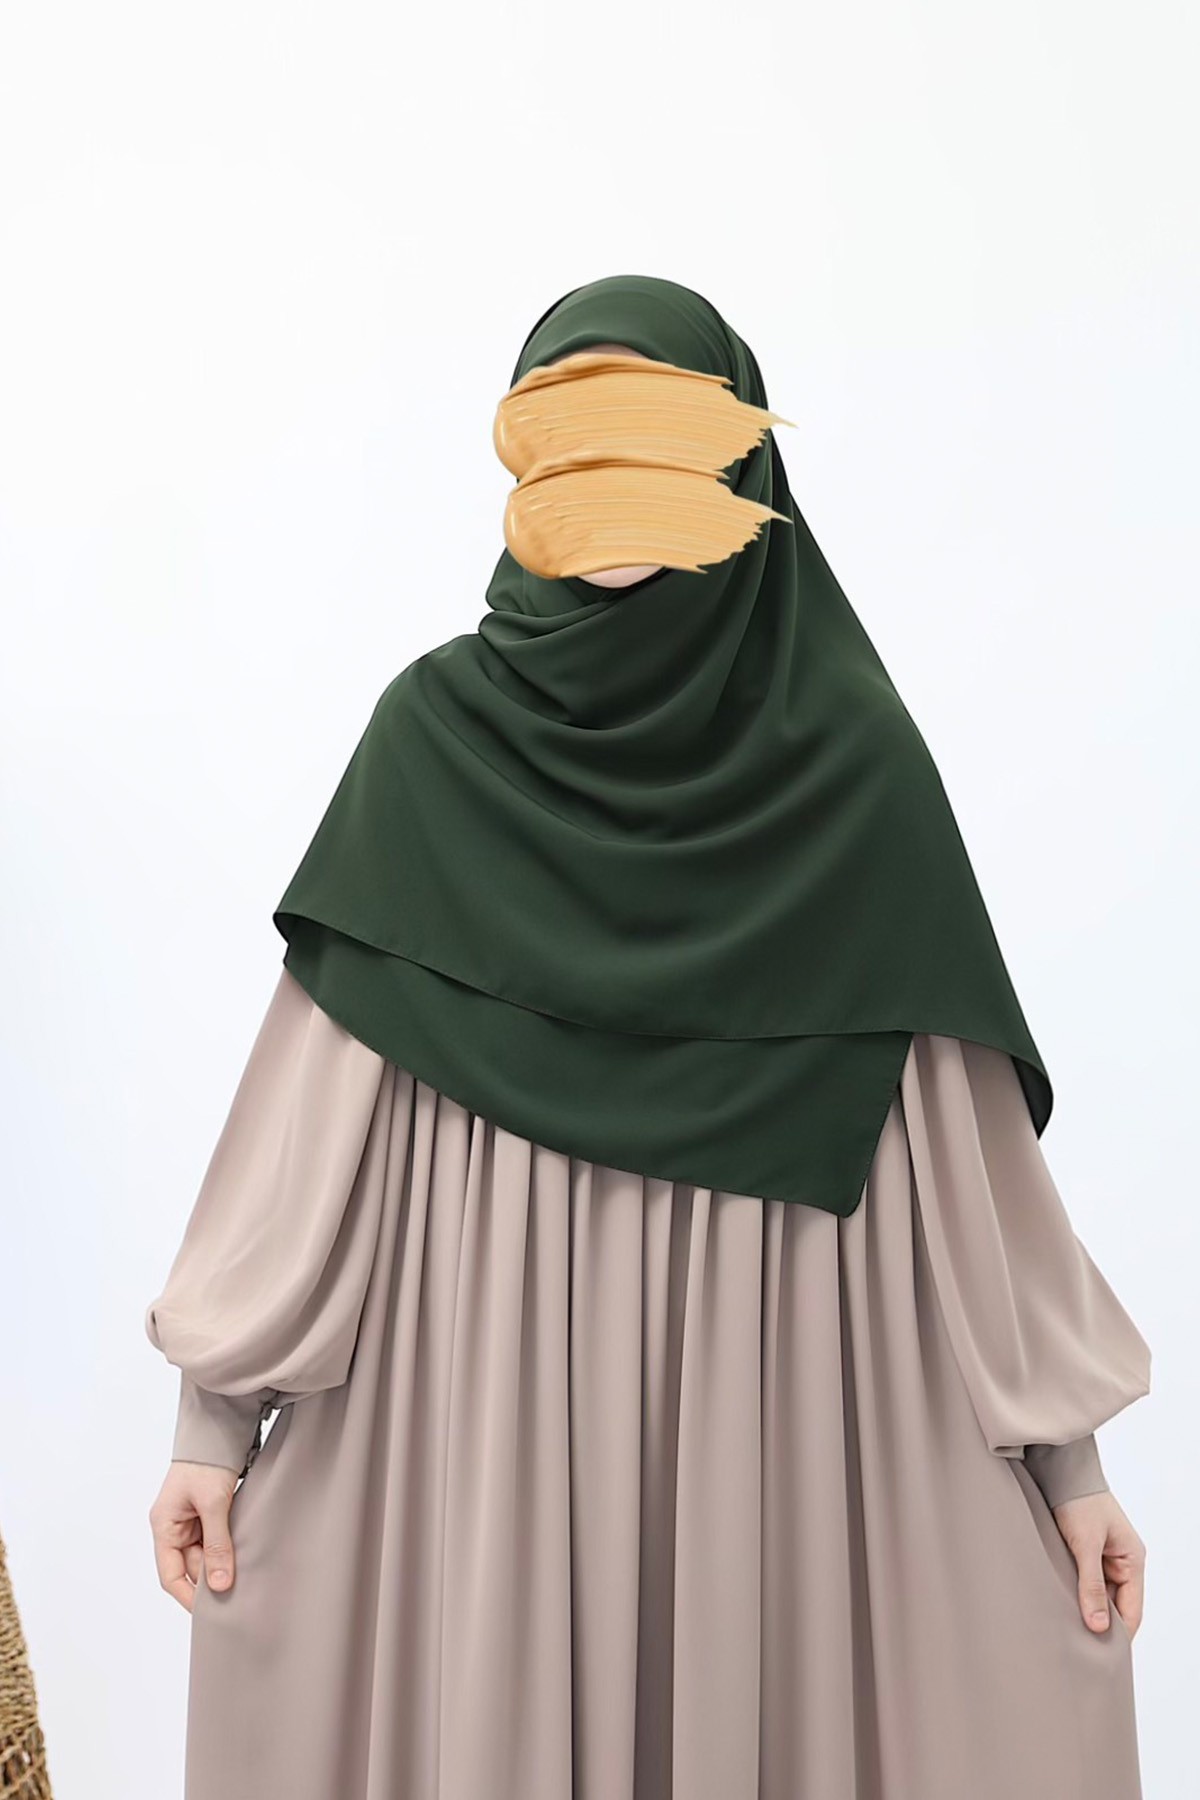 Square Hijab - Khaki